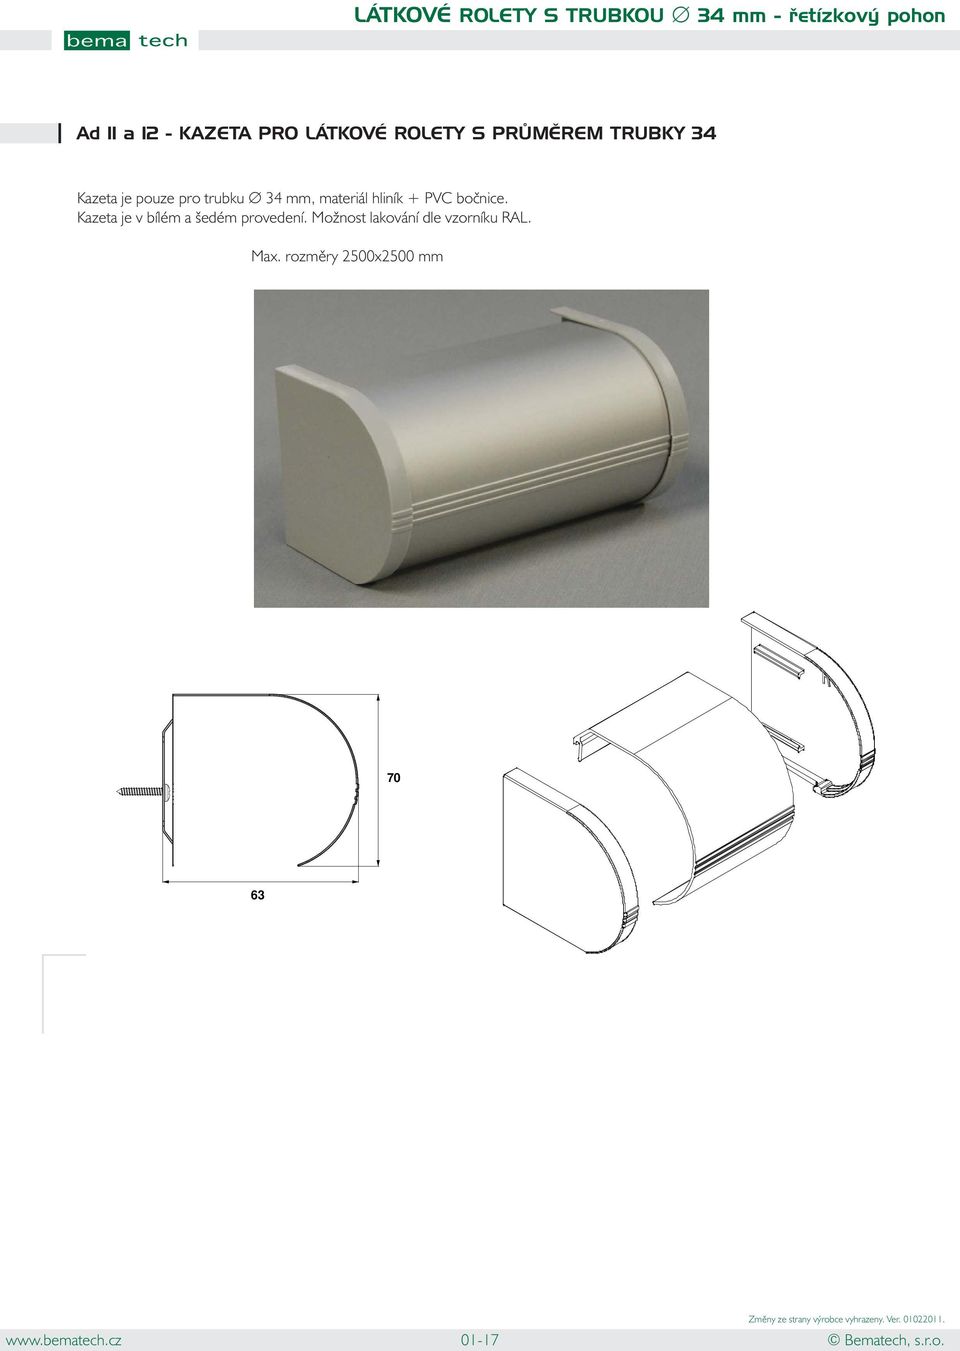 mm, materiál hliník + PVC bočnice. Kazeta je v bílém a šedém provedení.